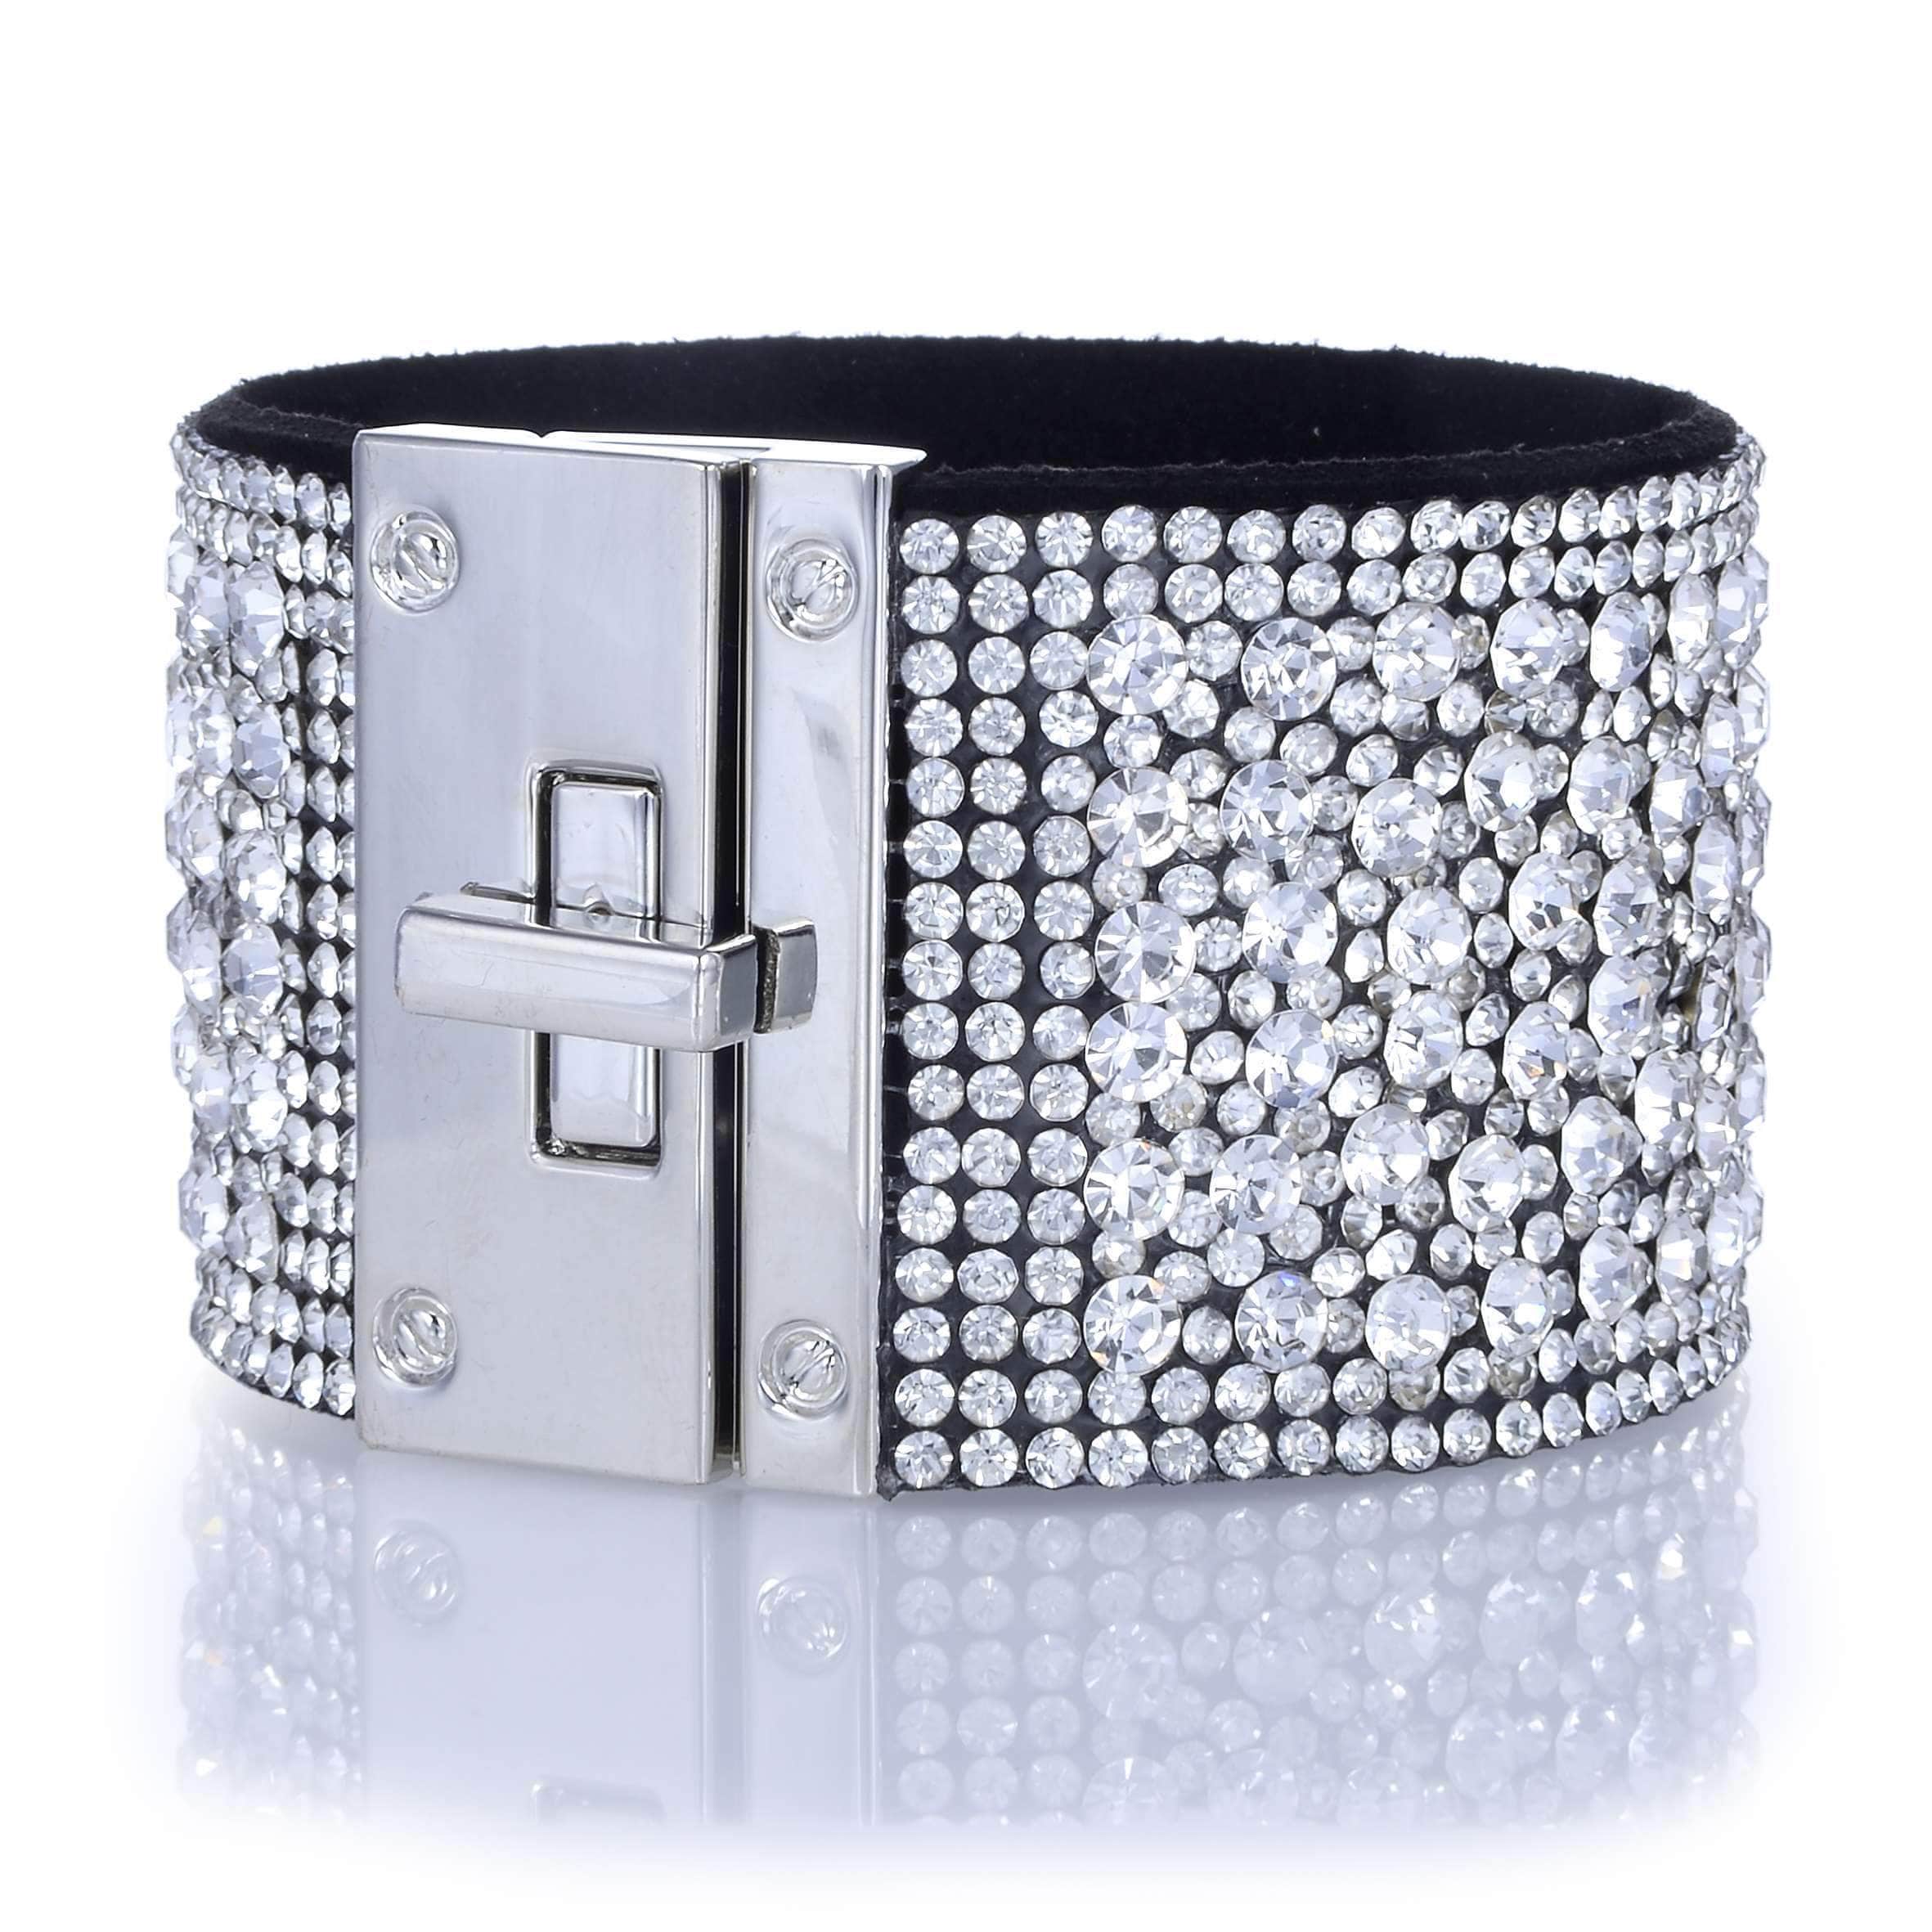 Kalifano Multiwrap Bracelets Swarovski Crystal Leather Band Bracelet White/Black with Toggle Lock BMW-17-WE